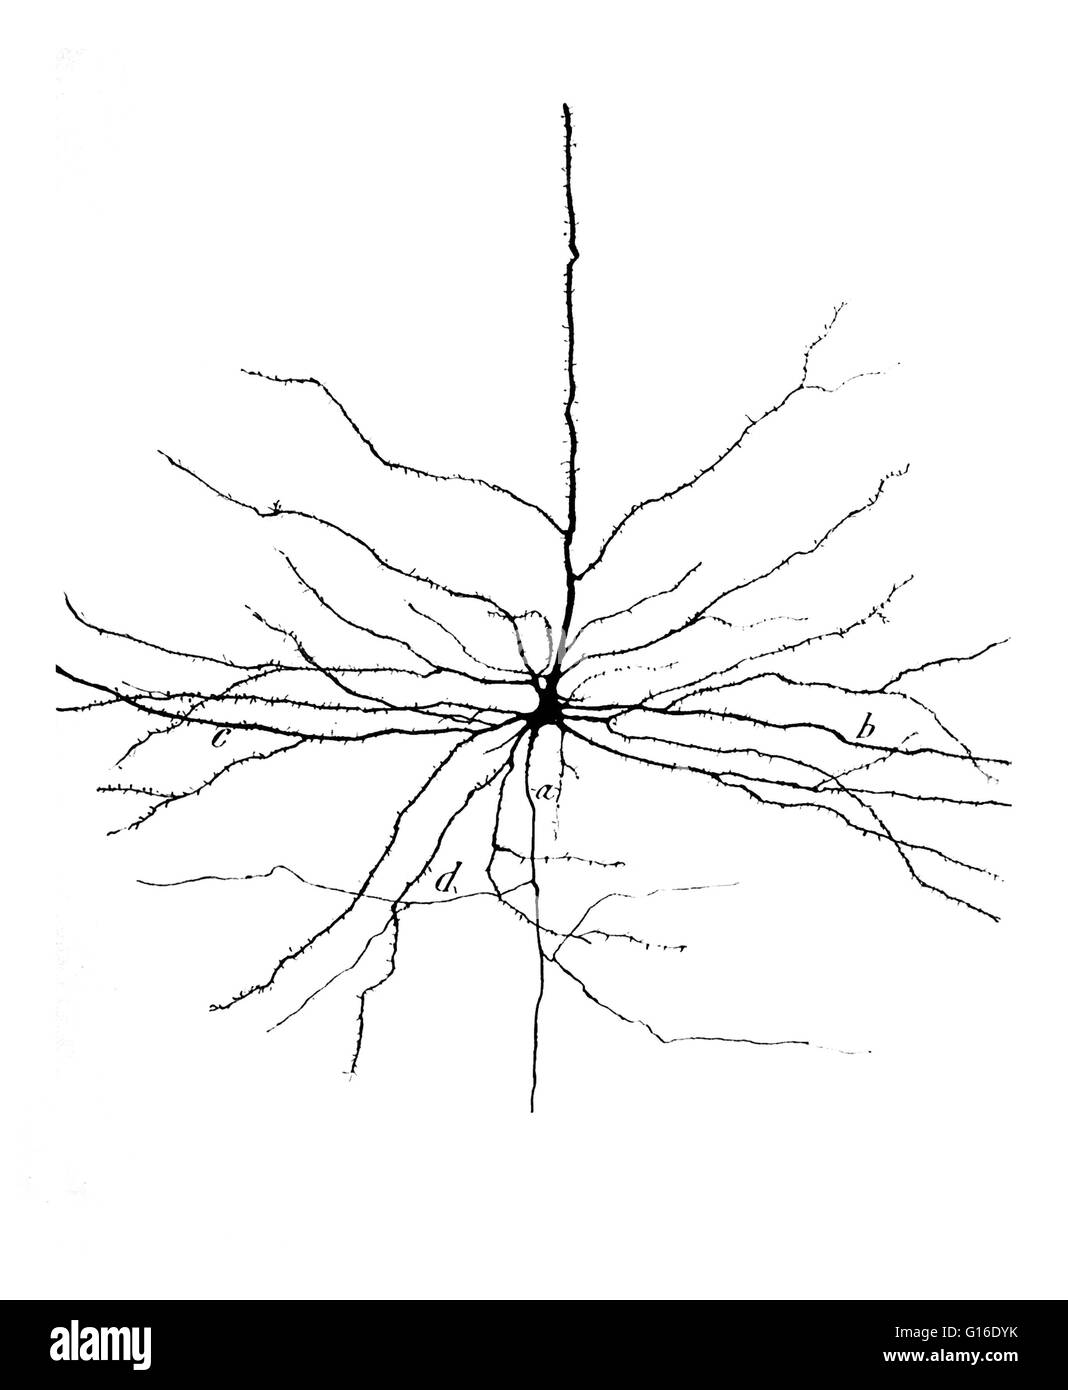 Dessin d'une cellule pyramidale dans le cortex moteur cérébral par Santiago Ramón y Cajal (1852-1934). Les neurones pyramidaux (cellules pyramidales) sont un type de neurone trouvés dans les zones du cerveau, notamment le cortex cérébral, l'hippocampe et l'amygdale. Pyramida Banque D'Images